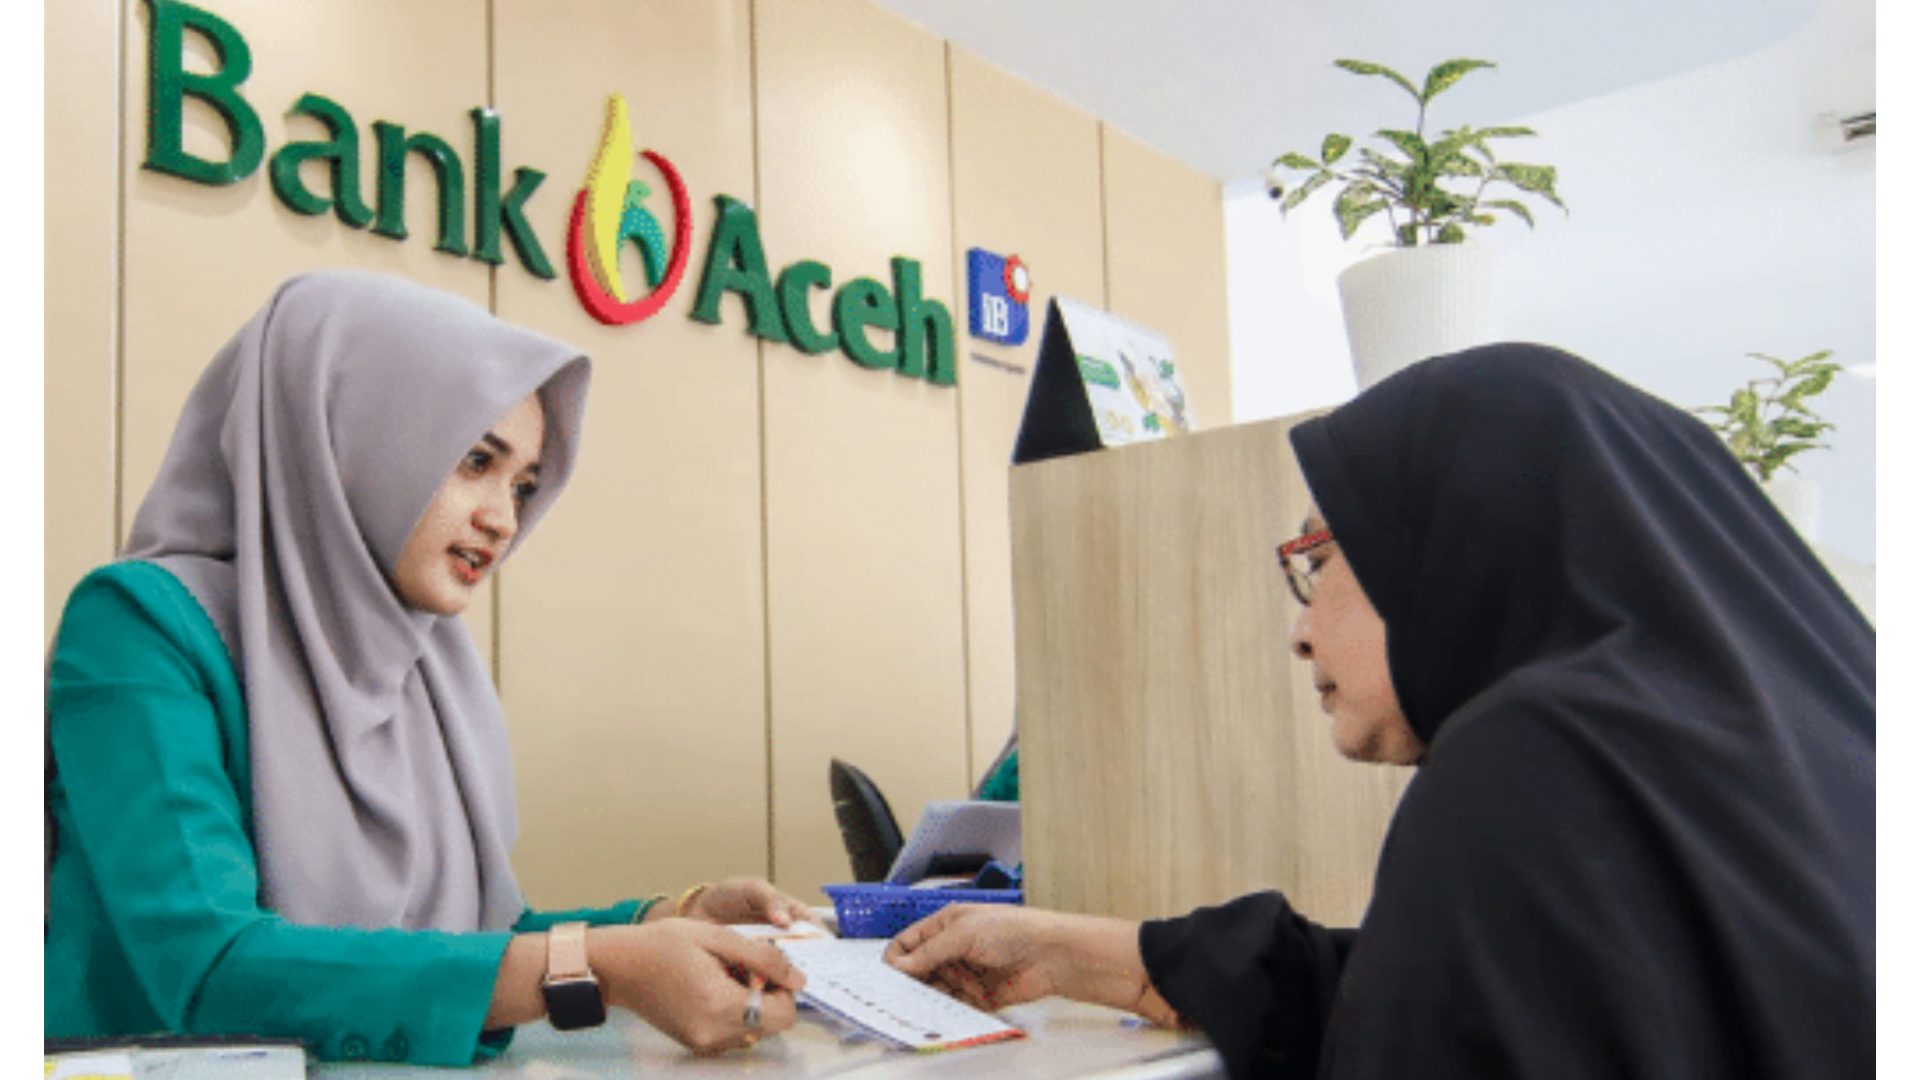 Pinjaman Online Bank Aceh: Cara Mengajukan Pinjaman dengan Mudah, Cepat, dan Aman